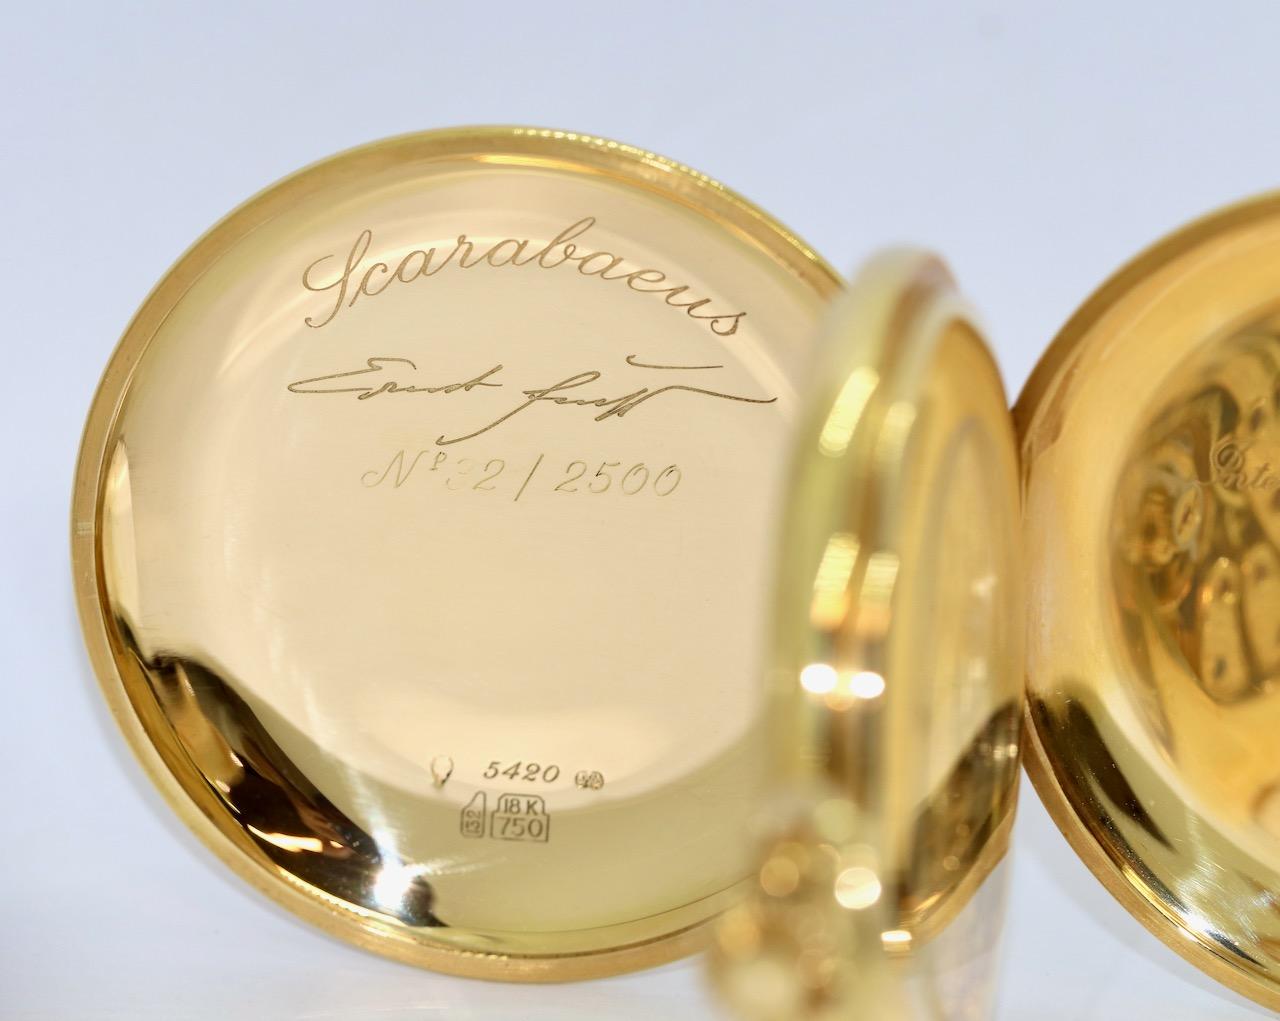 18 Karat Gold limited IWC Pocket Watch, Scarabaeus by Ernst Fuchs, Ref. 5420 For Sale 5